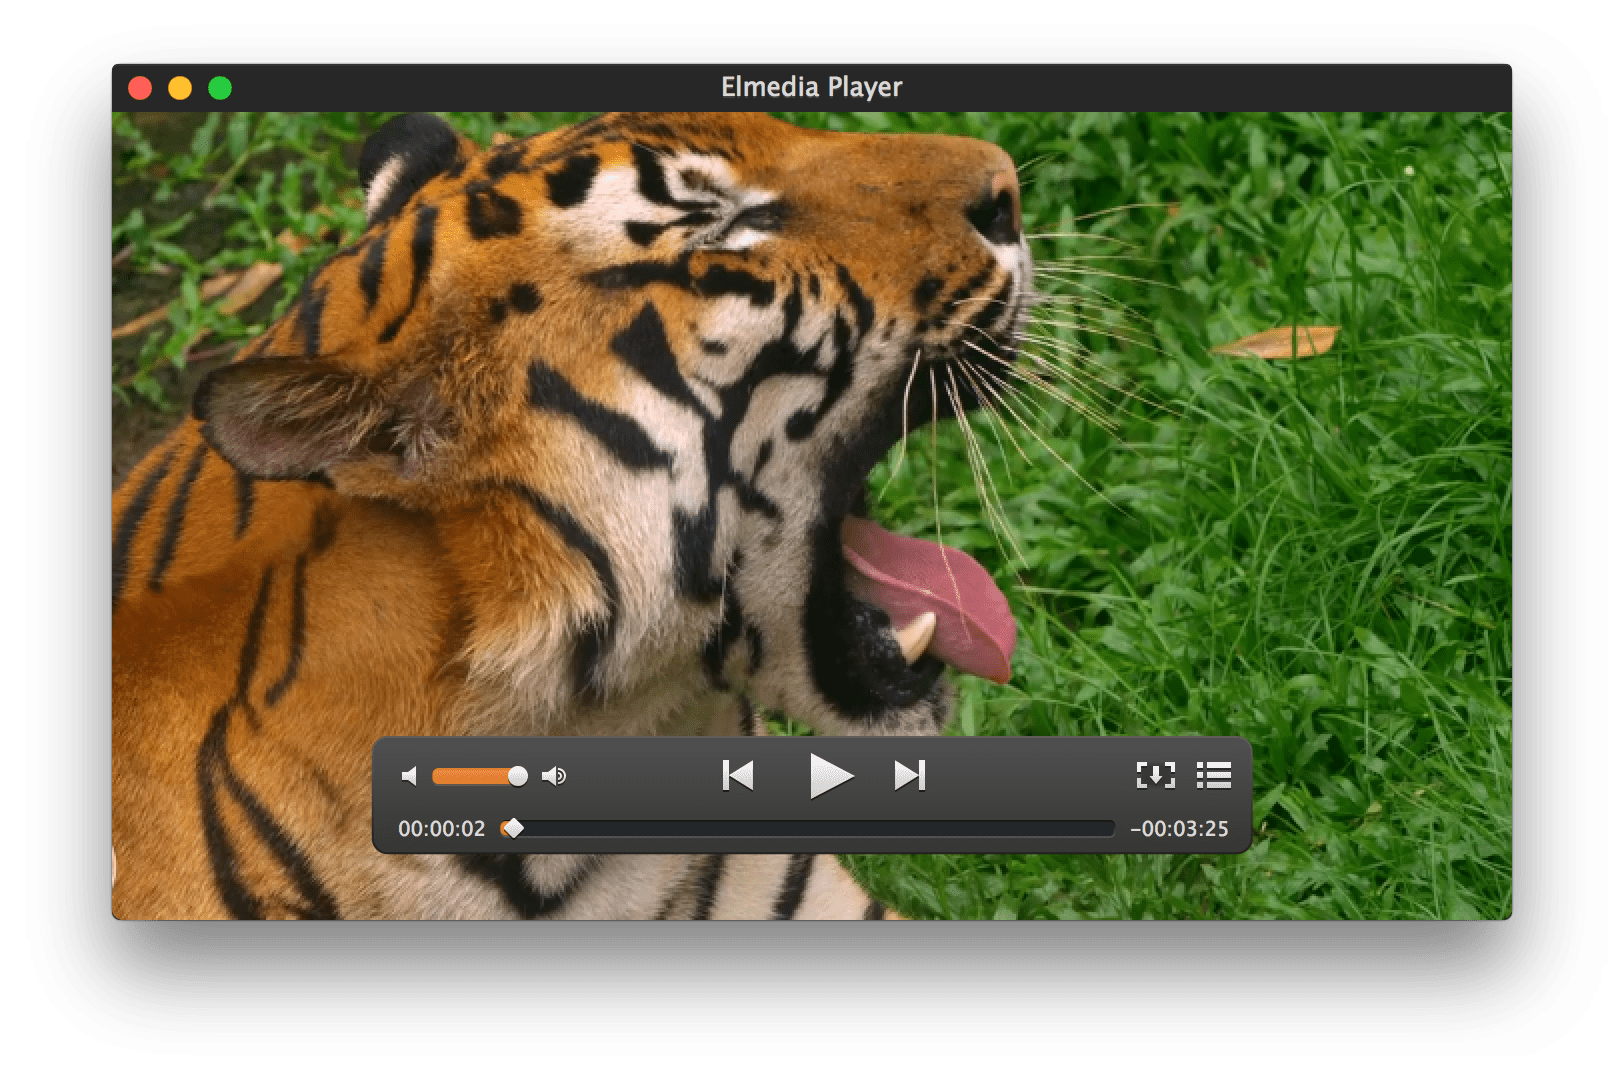 elmedia video player move forward 15 seconds